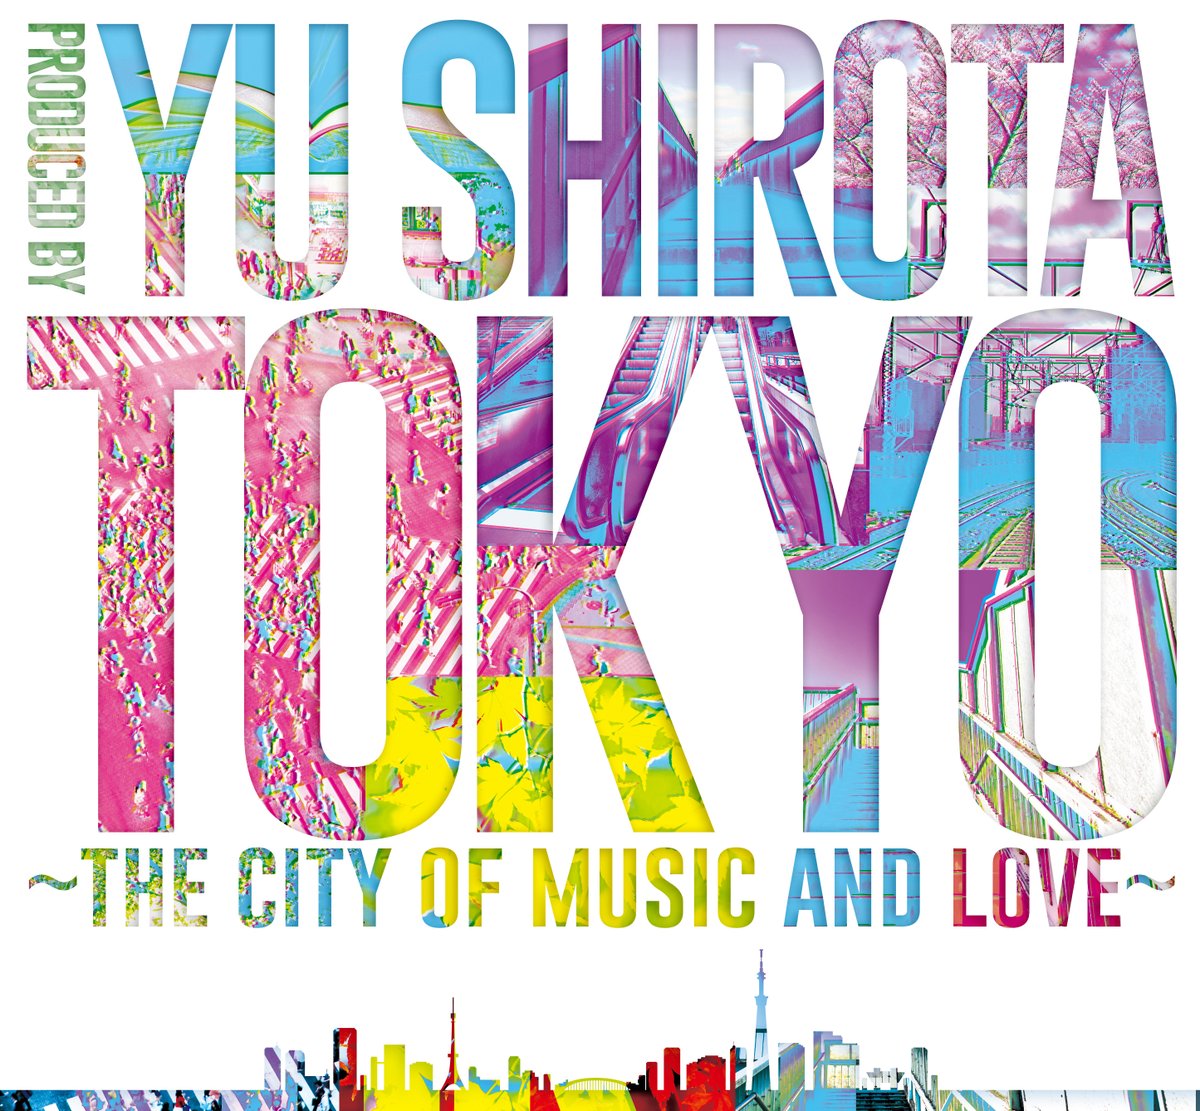 城田優さん「TOKYO〜the city of music and love〜」セットリスト一部公開！城田さんメッセージも。 🖊記事 35-45.net/culture/tokyos… 🔗オフィシャルサイト tokyoshow24.jp #城田優 #YuShirota